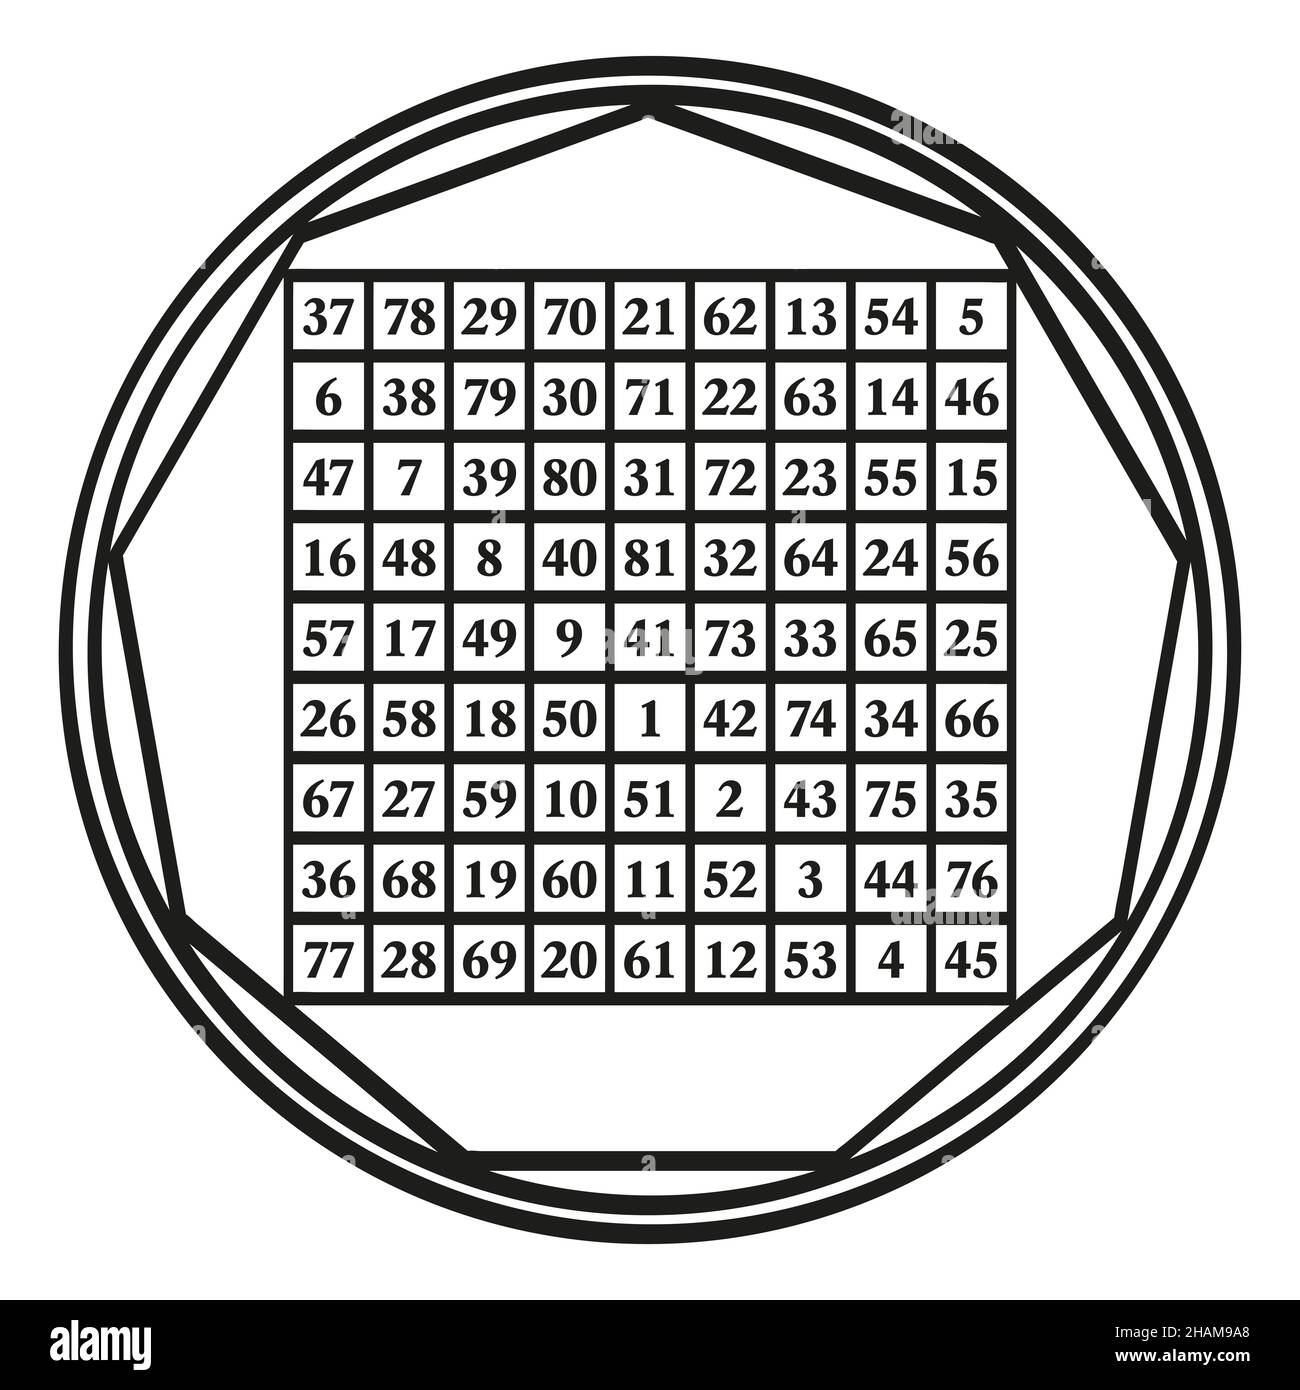 Ordine nove quadrato magico, un simbolo assegnato alla Luna astrologica, con la costante magica 369. Un quadrato magico con i numeri da 1 a 81. Foto Stock